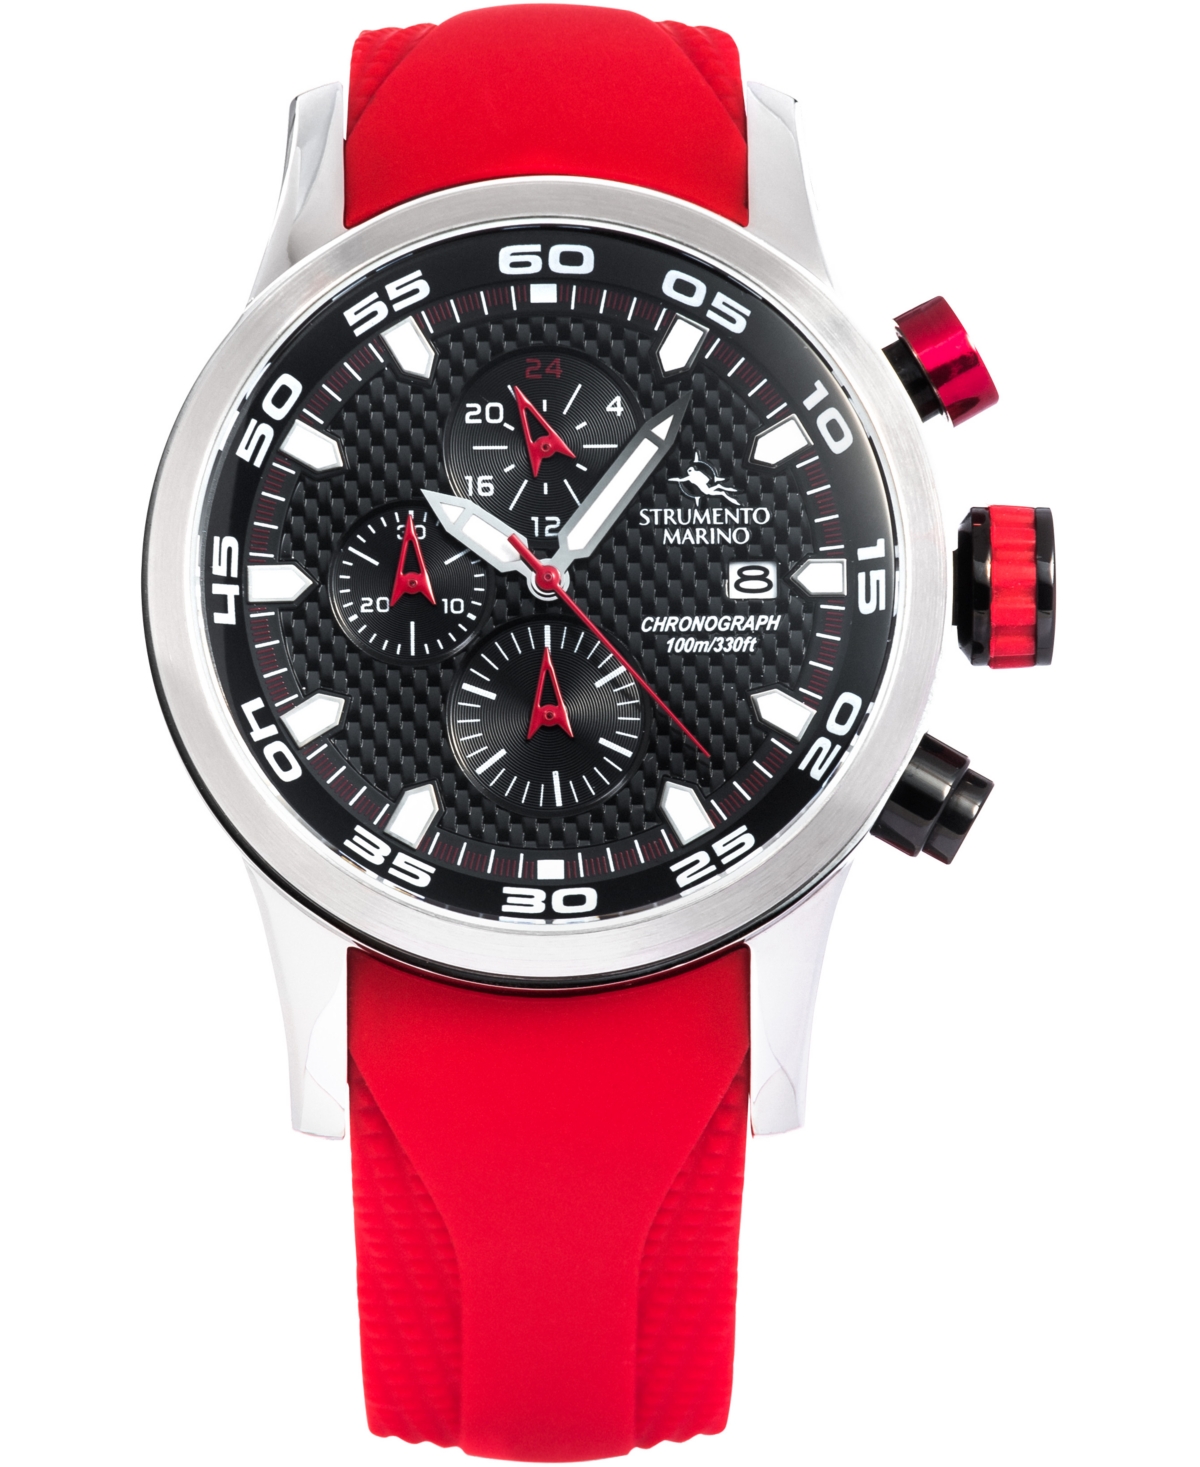 Strumento Marino Men's Speedboat Red Silicone Performance Timepiece Watch 46mm